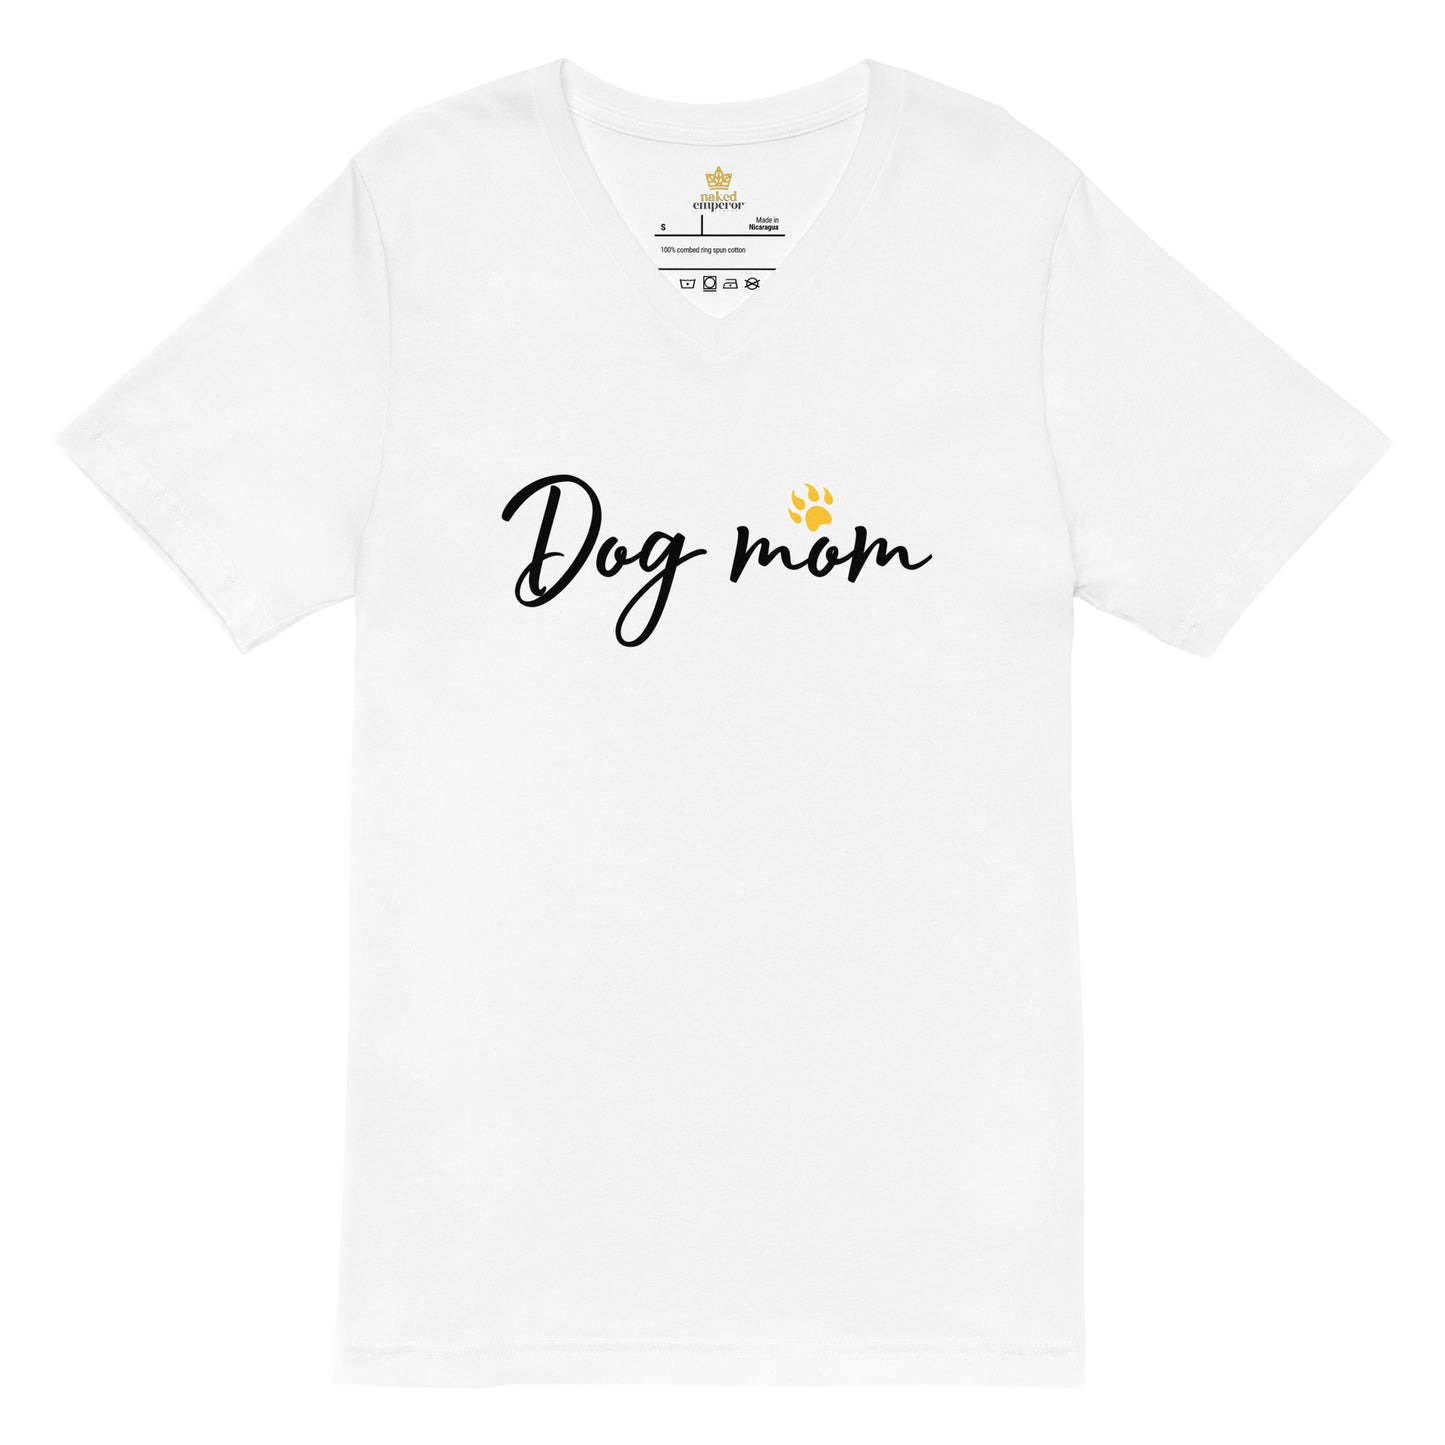 Dog Mom V-Neck T-Shirt